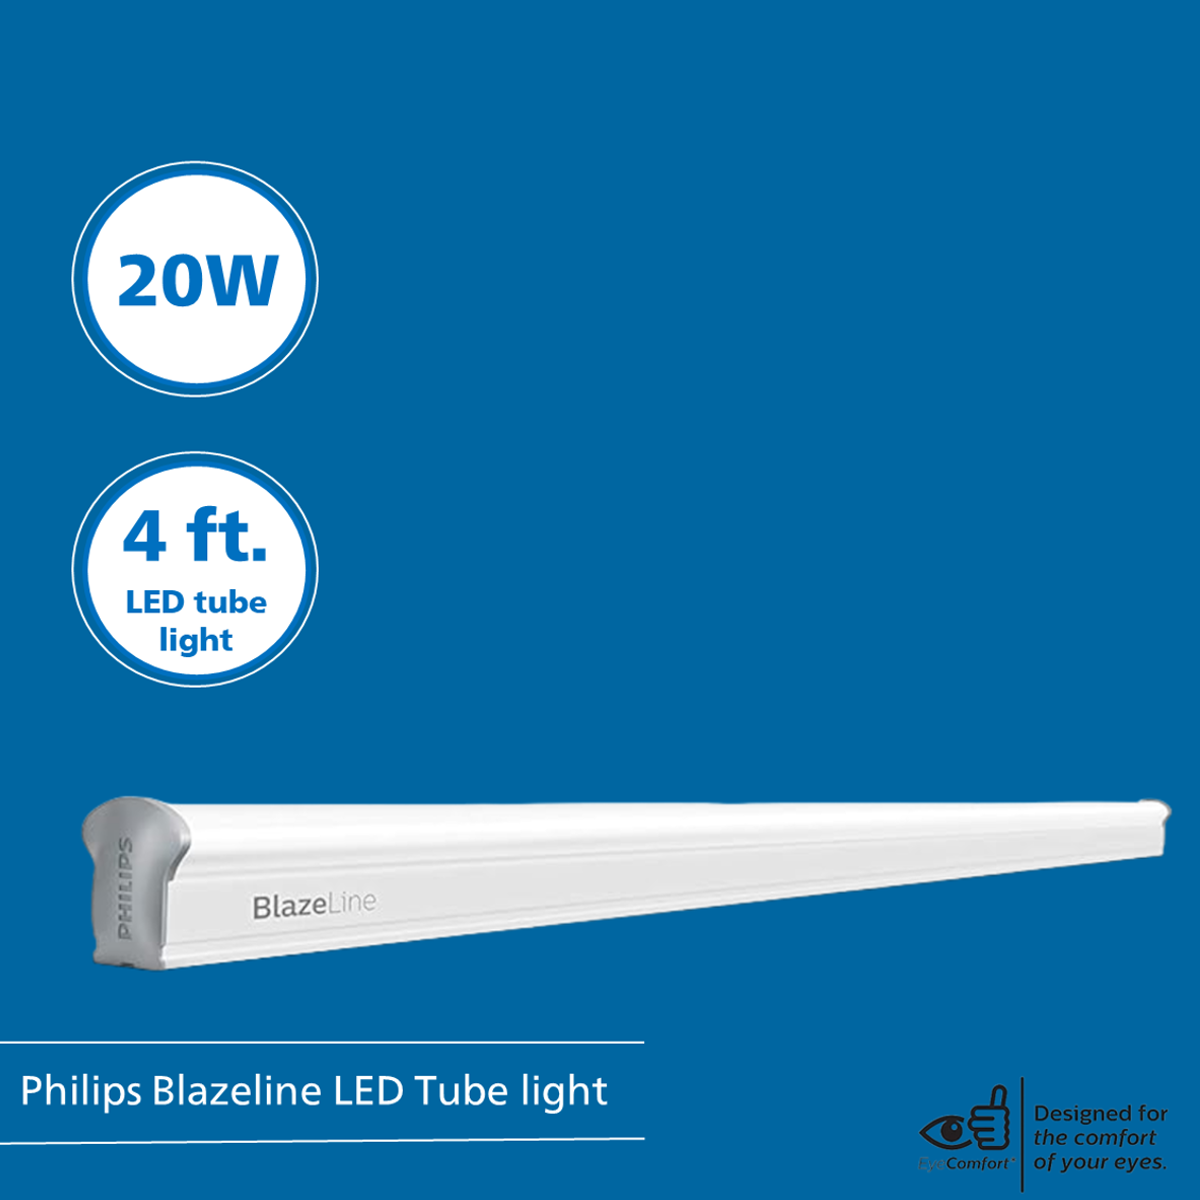 Philips Blazeline LED Tube light